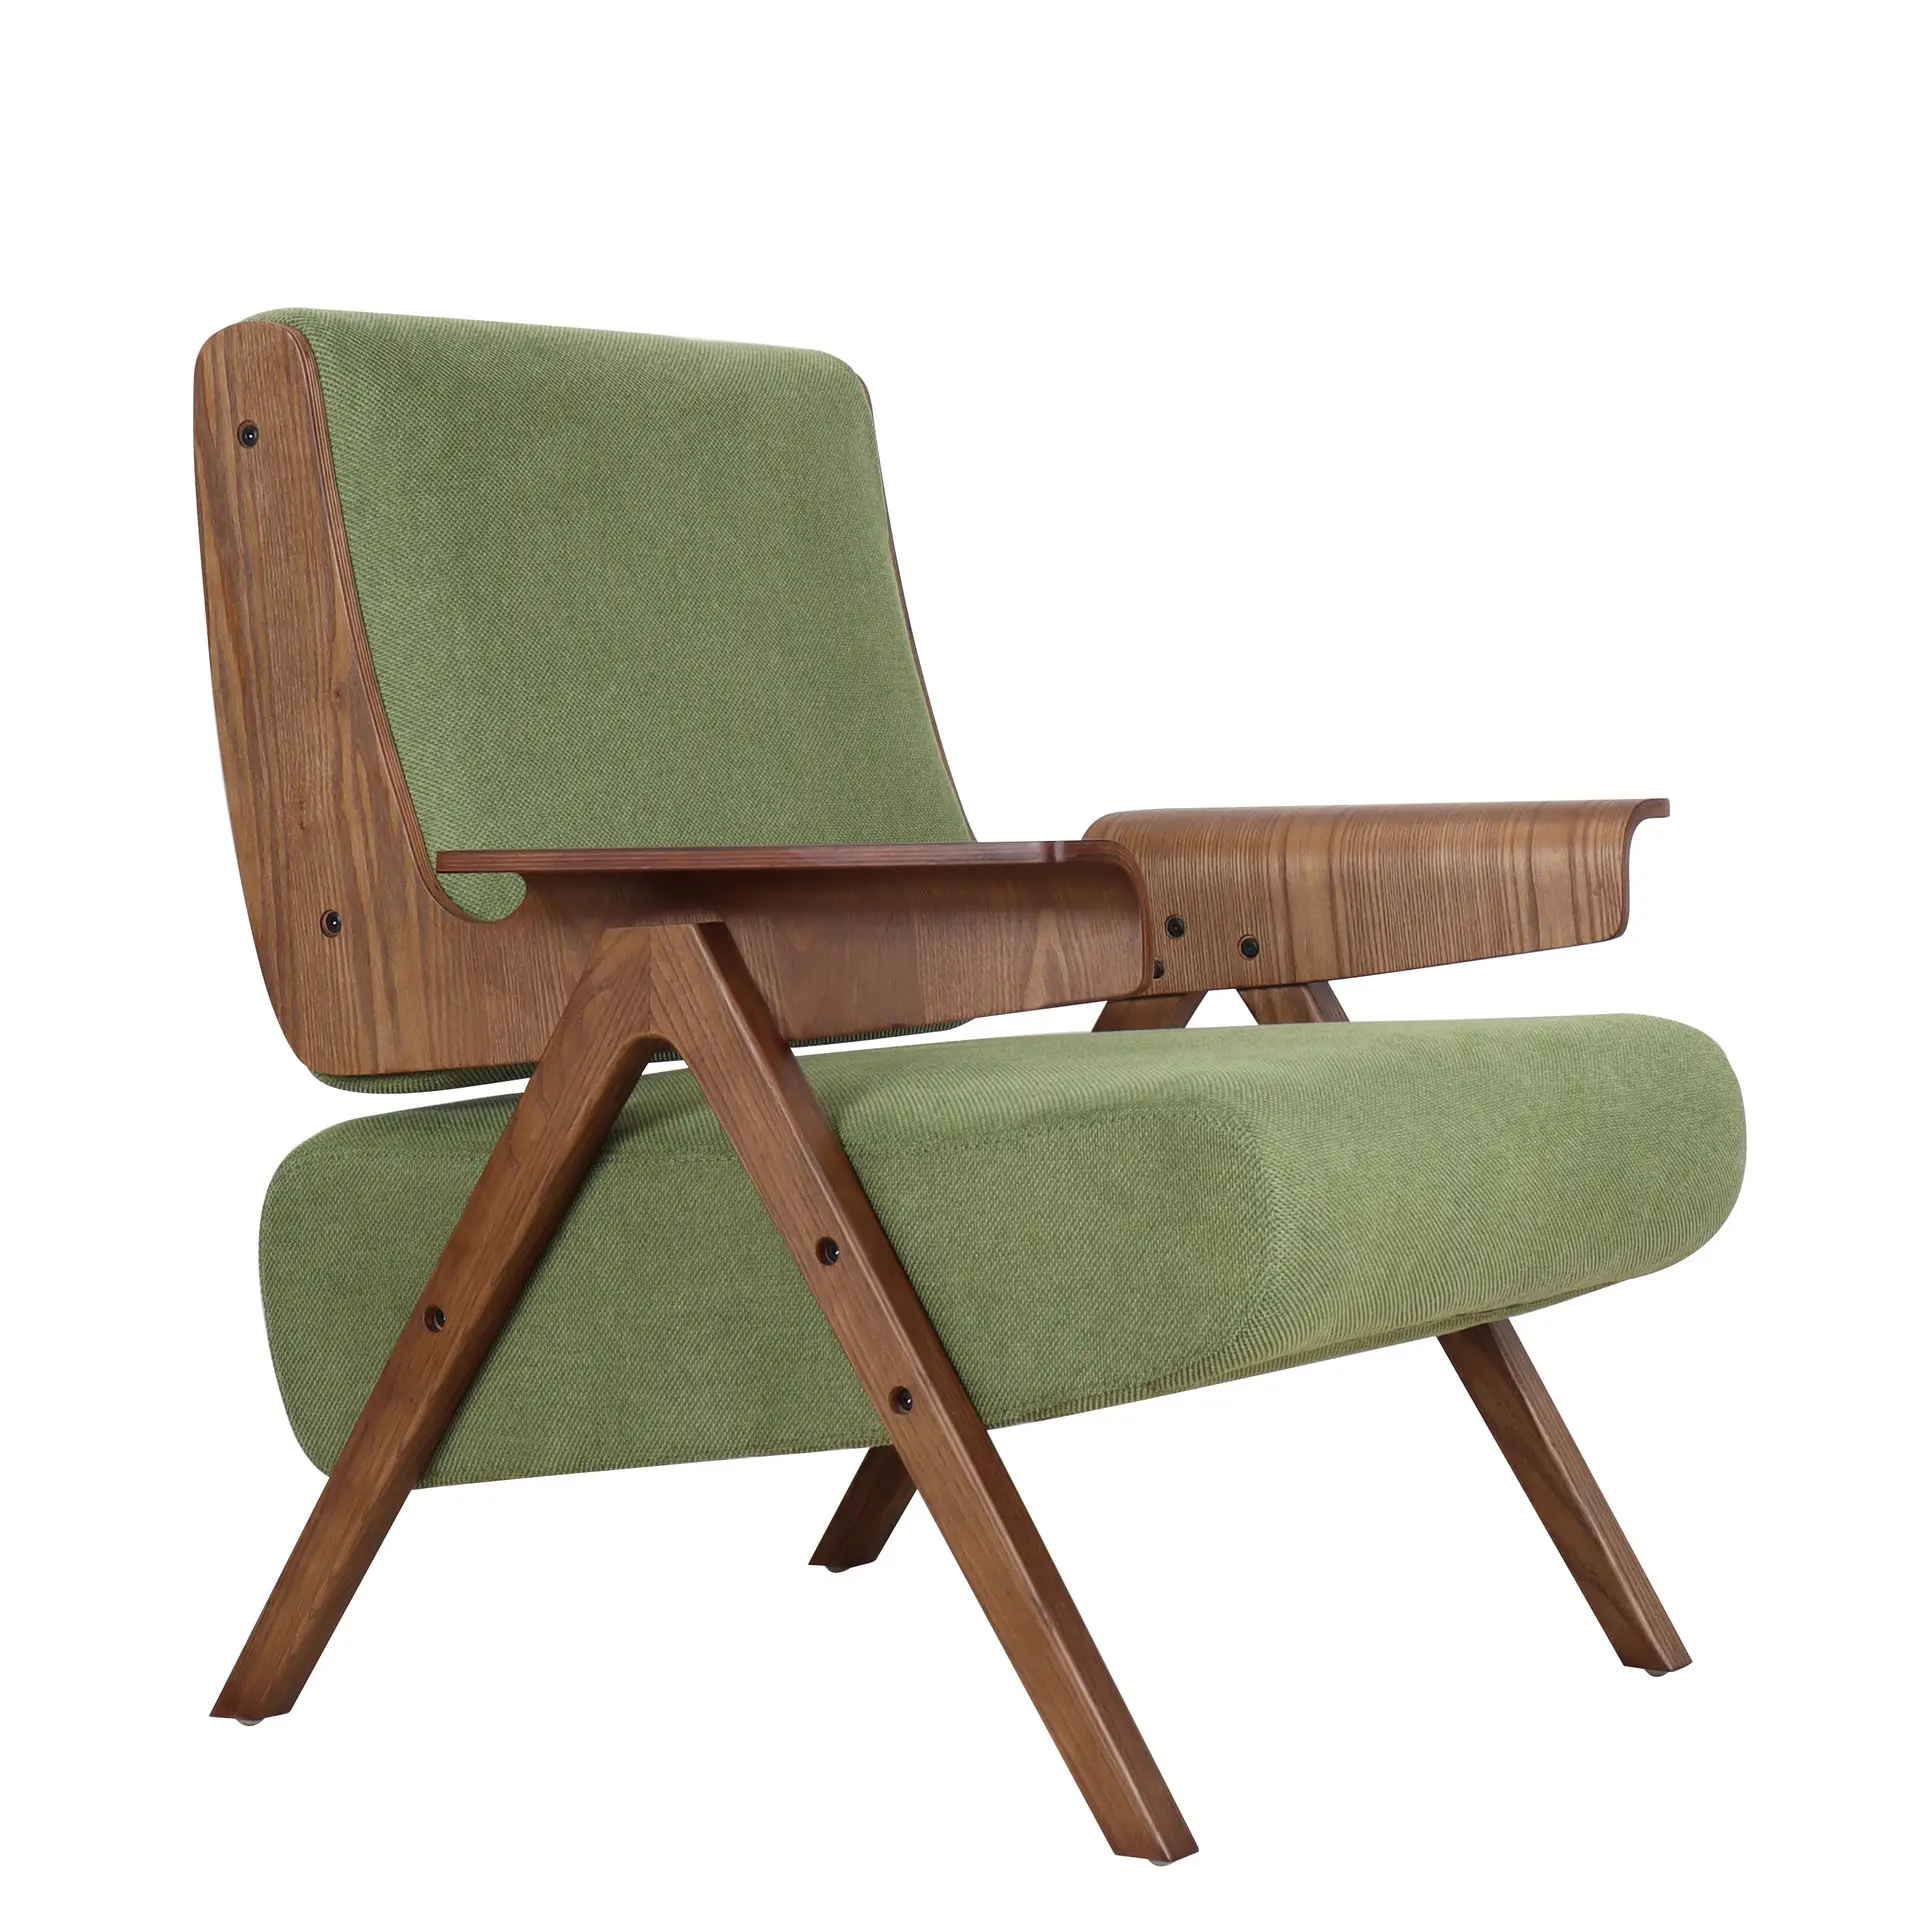 Produk baru desain minimalis Nordic gaya Modern kursi ruang tamu kayu Solid busa kepadatan tinggi kursi manufaktur disesuaikan